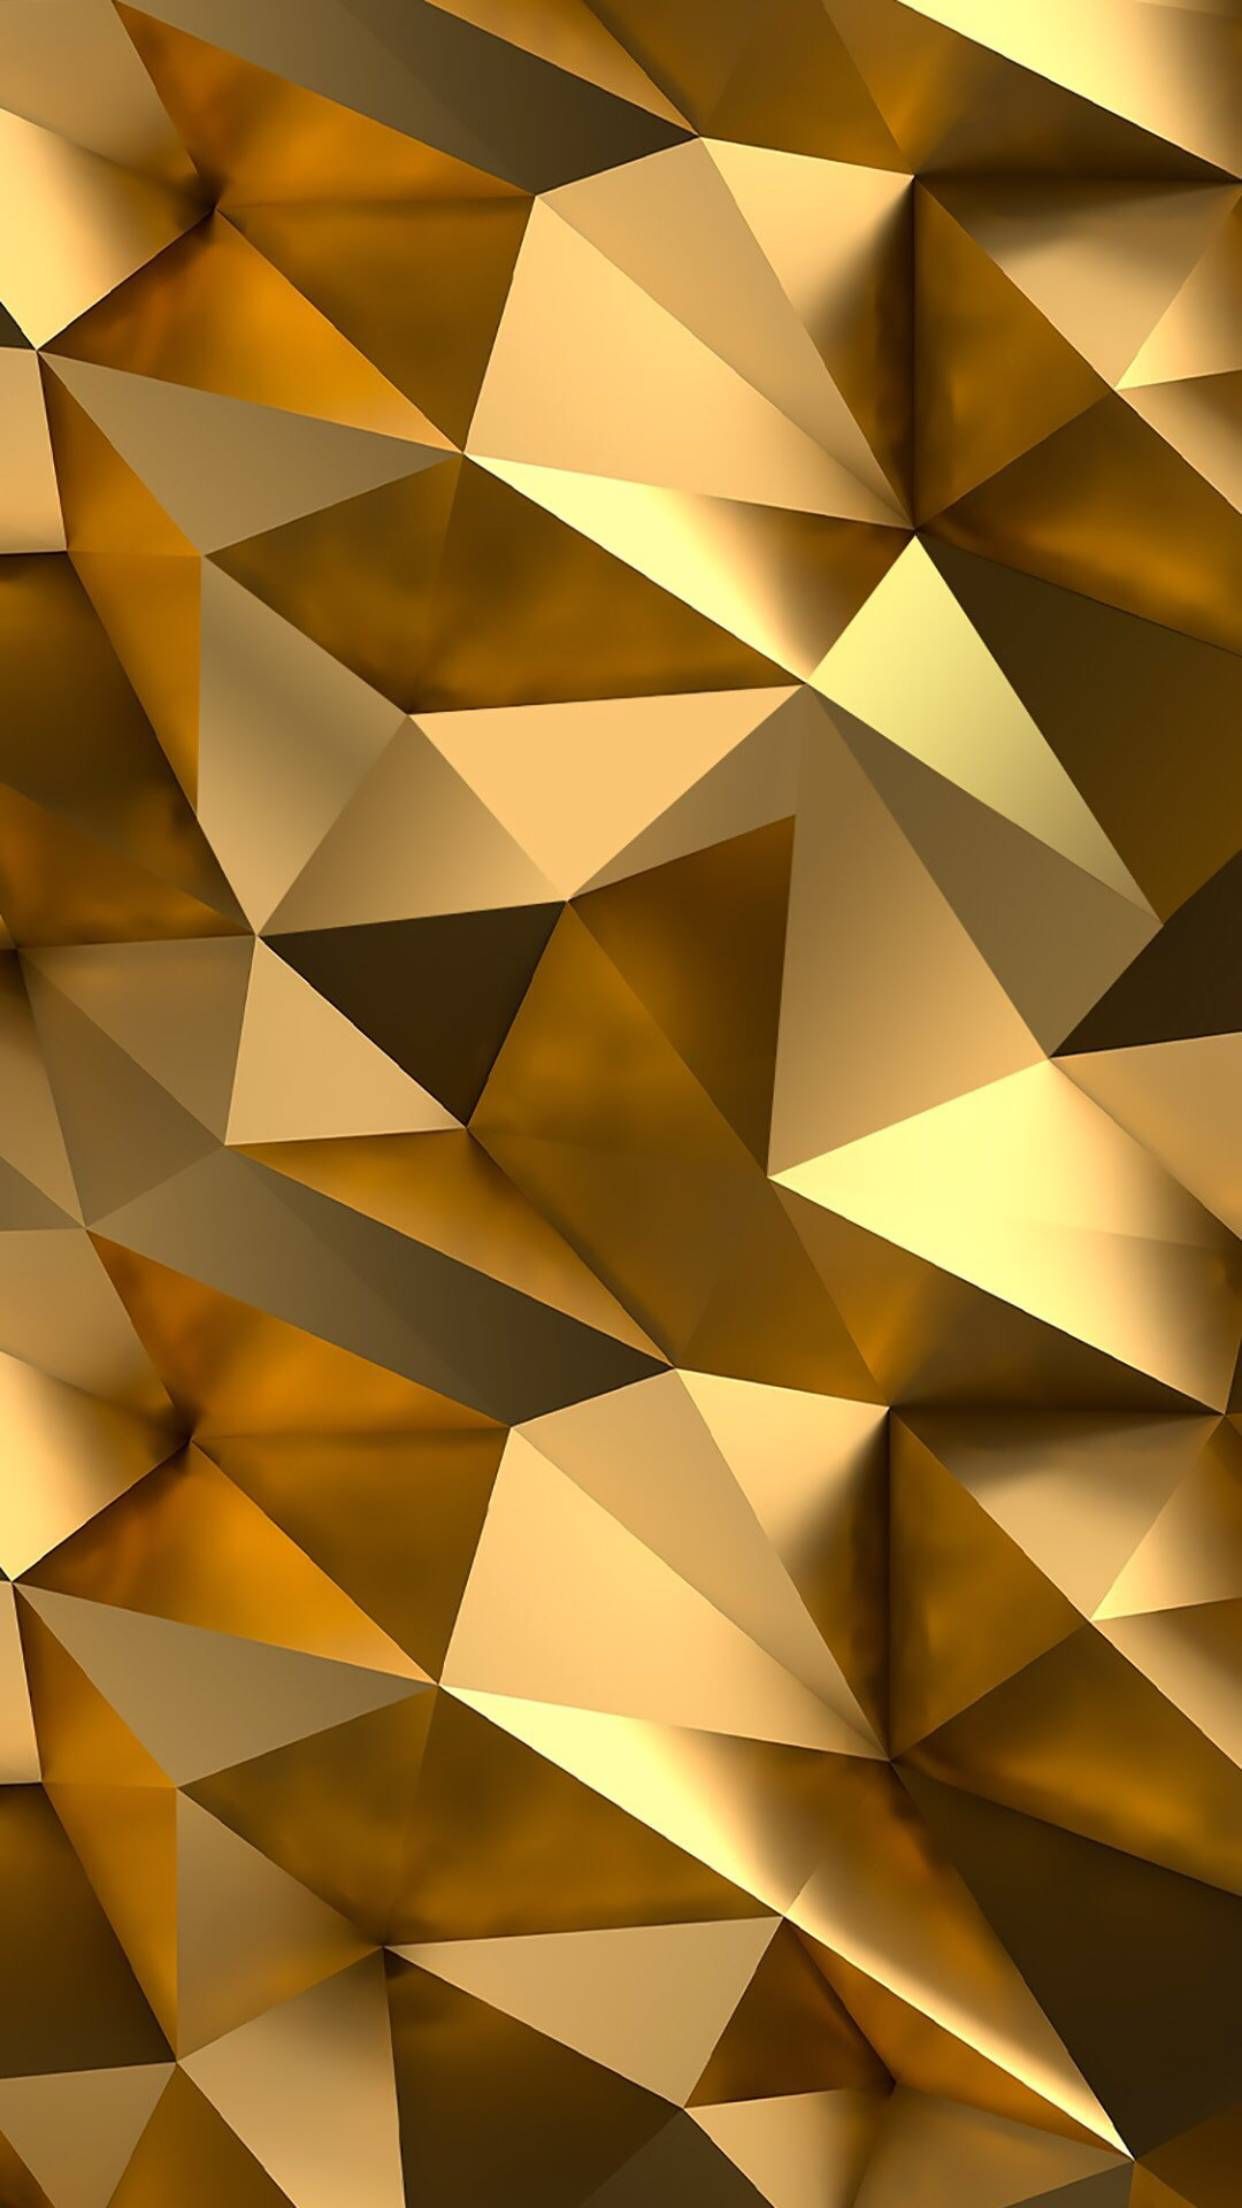 Tải xuống APK Vàng kim cương chủ đề hình nền Gold Diamond cho Android